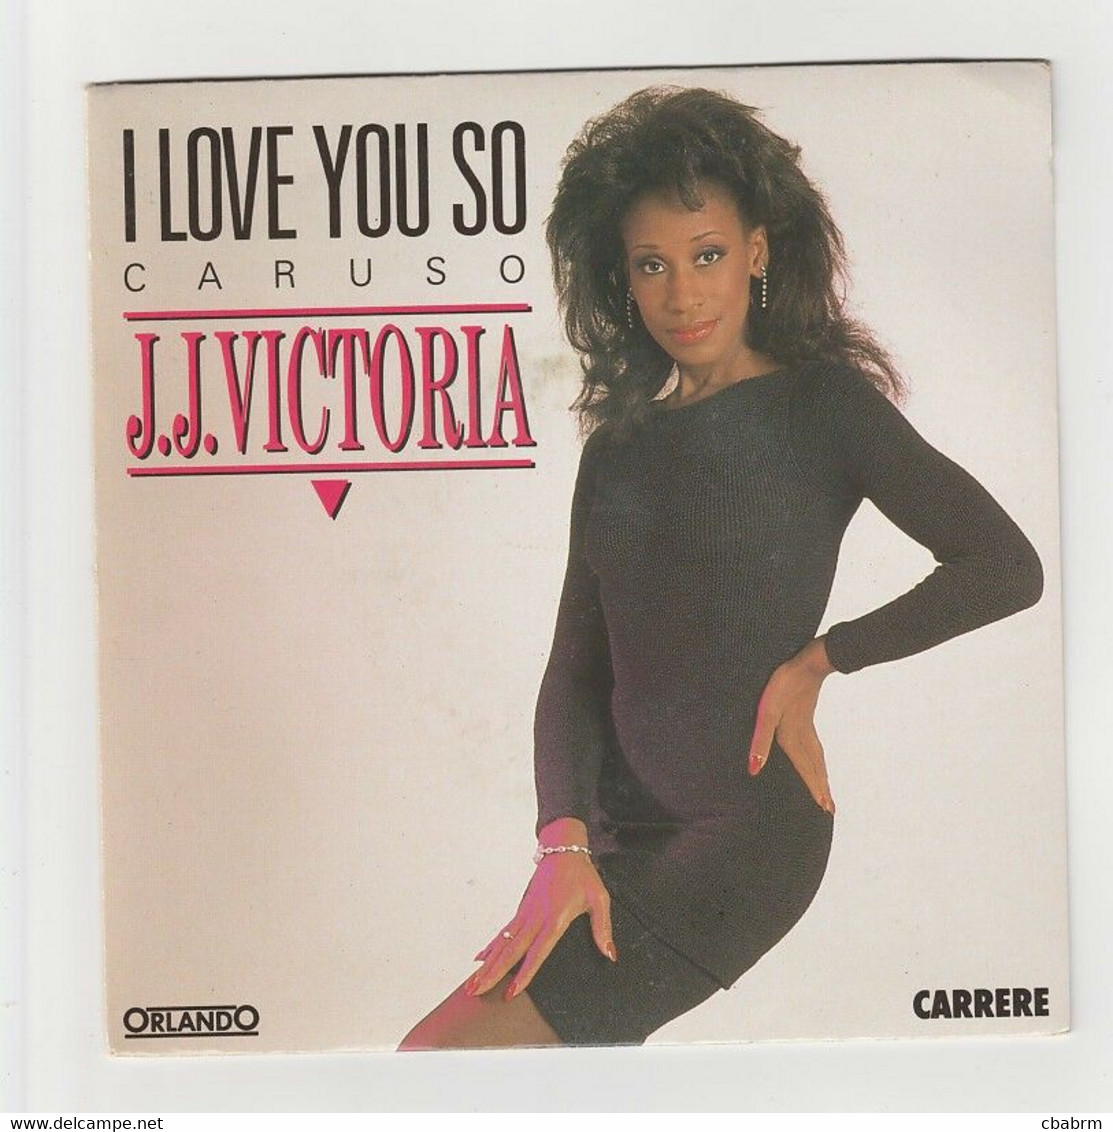 SP 45 TOURS J.J. VICTORIA I LOVE YOU SO CARUSO En 1990 ORLANDO 15 068 - Dance, Techno & House